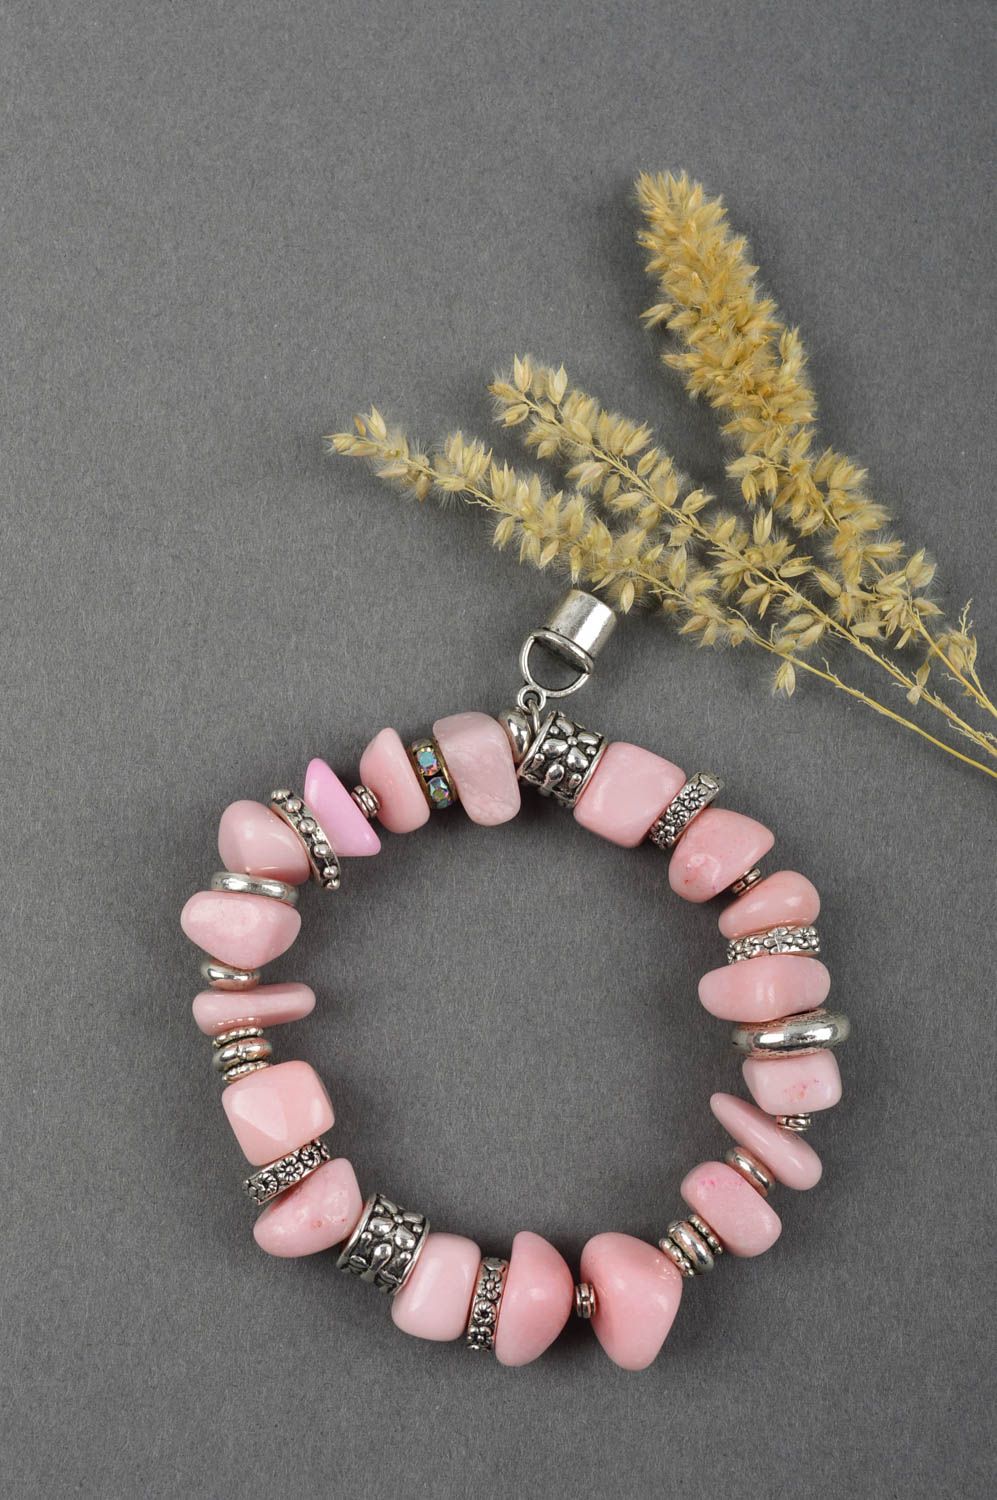 Браслет из бусин браслет ручной работы розовый стильный браслет из камней фото 1